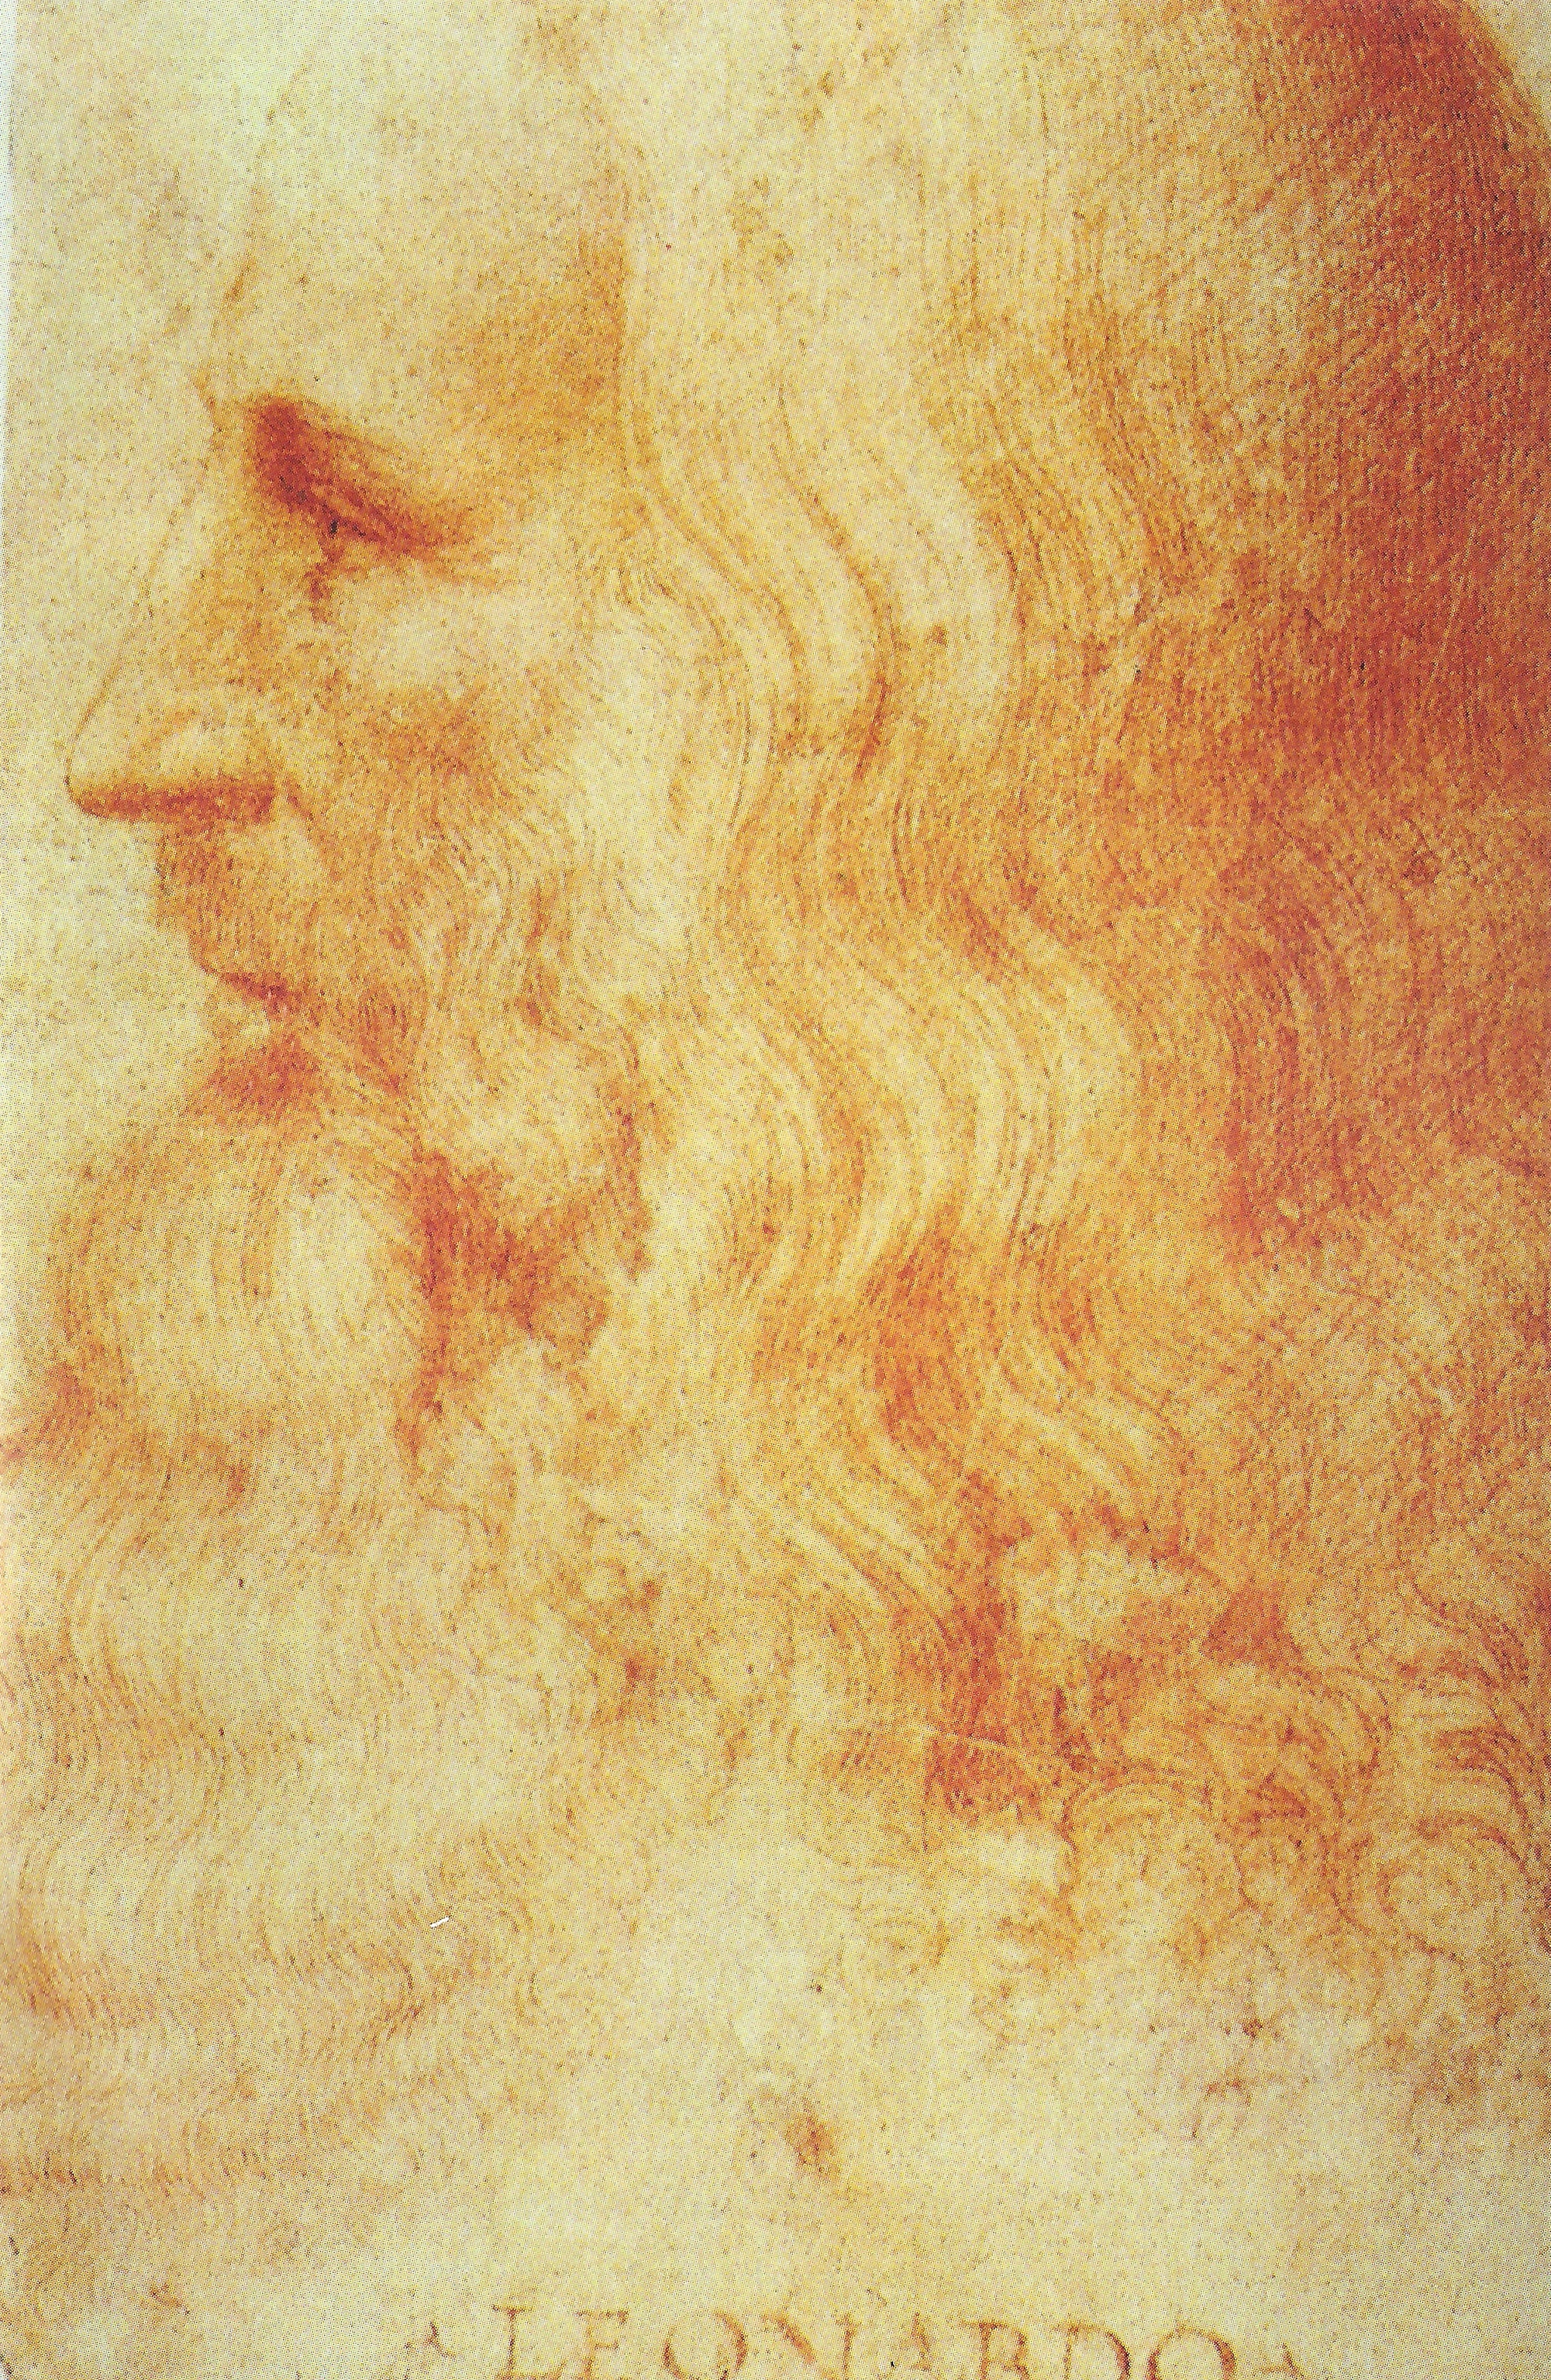 Леонардо да Винчи: художник, инженер, исследователь | Leonardo da Vinci: artist, engineer, researcher (30 фото) (1 часть) » Картины, художники, фотографы на Nevsepic